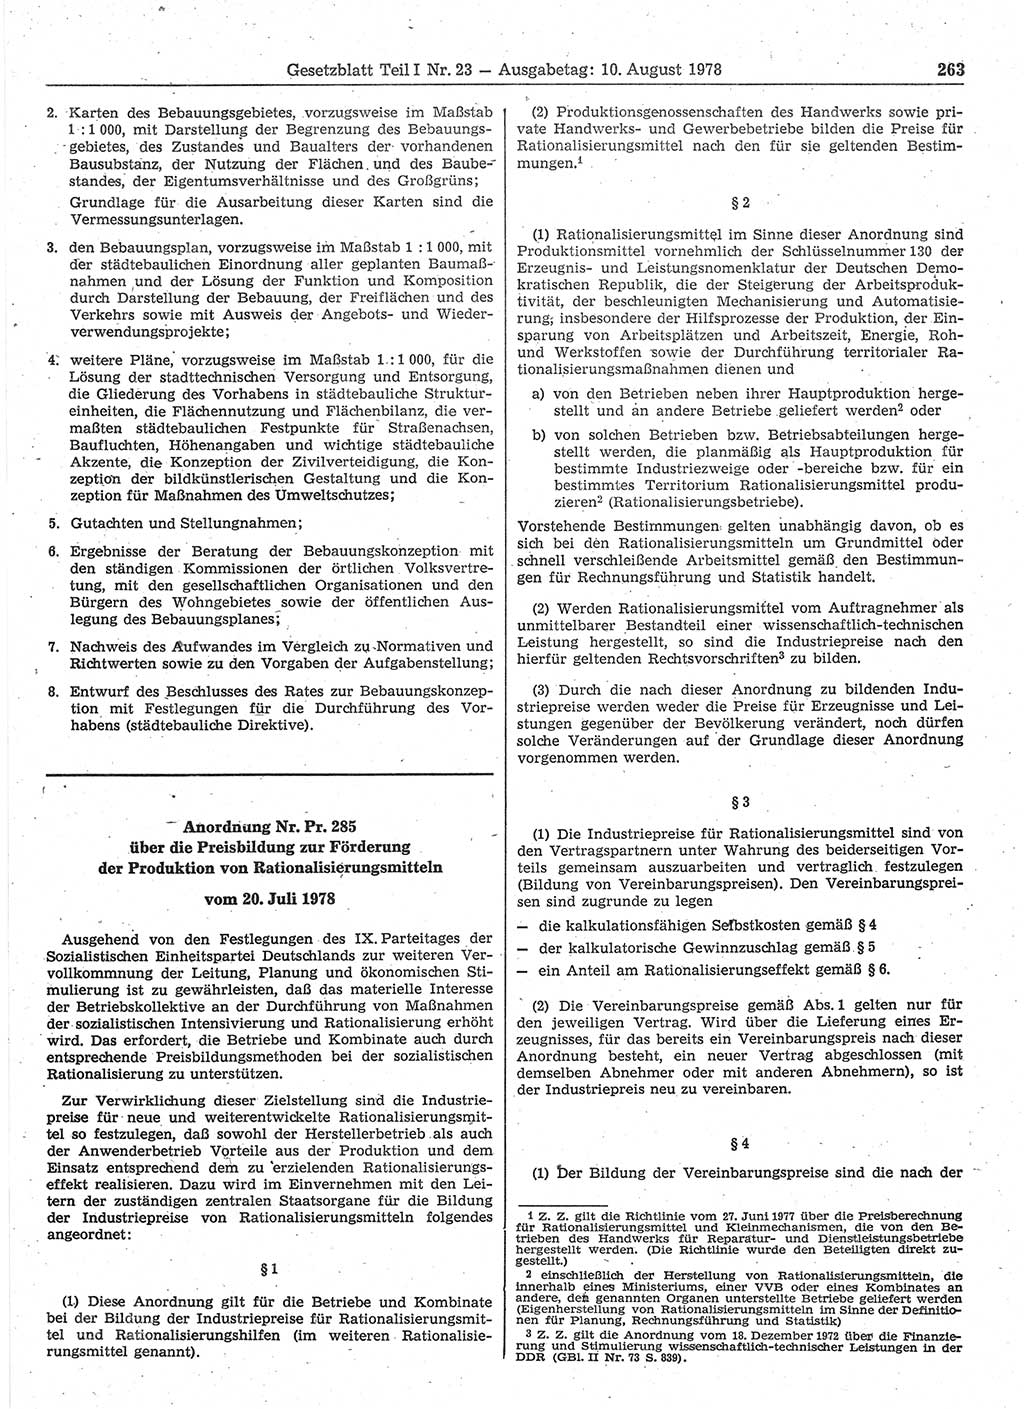 Gesetzblatt (GBl.) der Deutschen Demokratischen Republik (DDR) Teil Ⅰ 1978, Seite 263 (GBl. DDR Ⅰ 1978, S. 263)